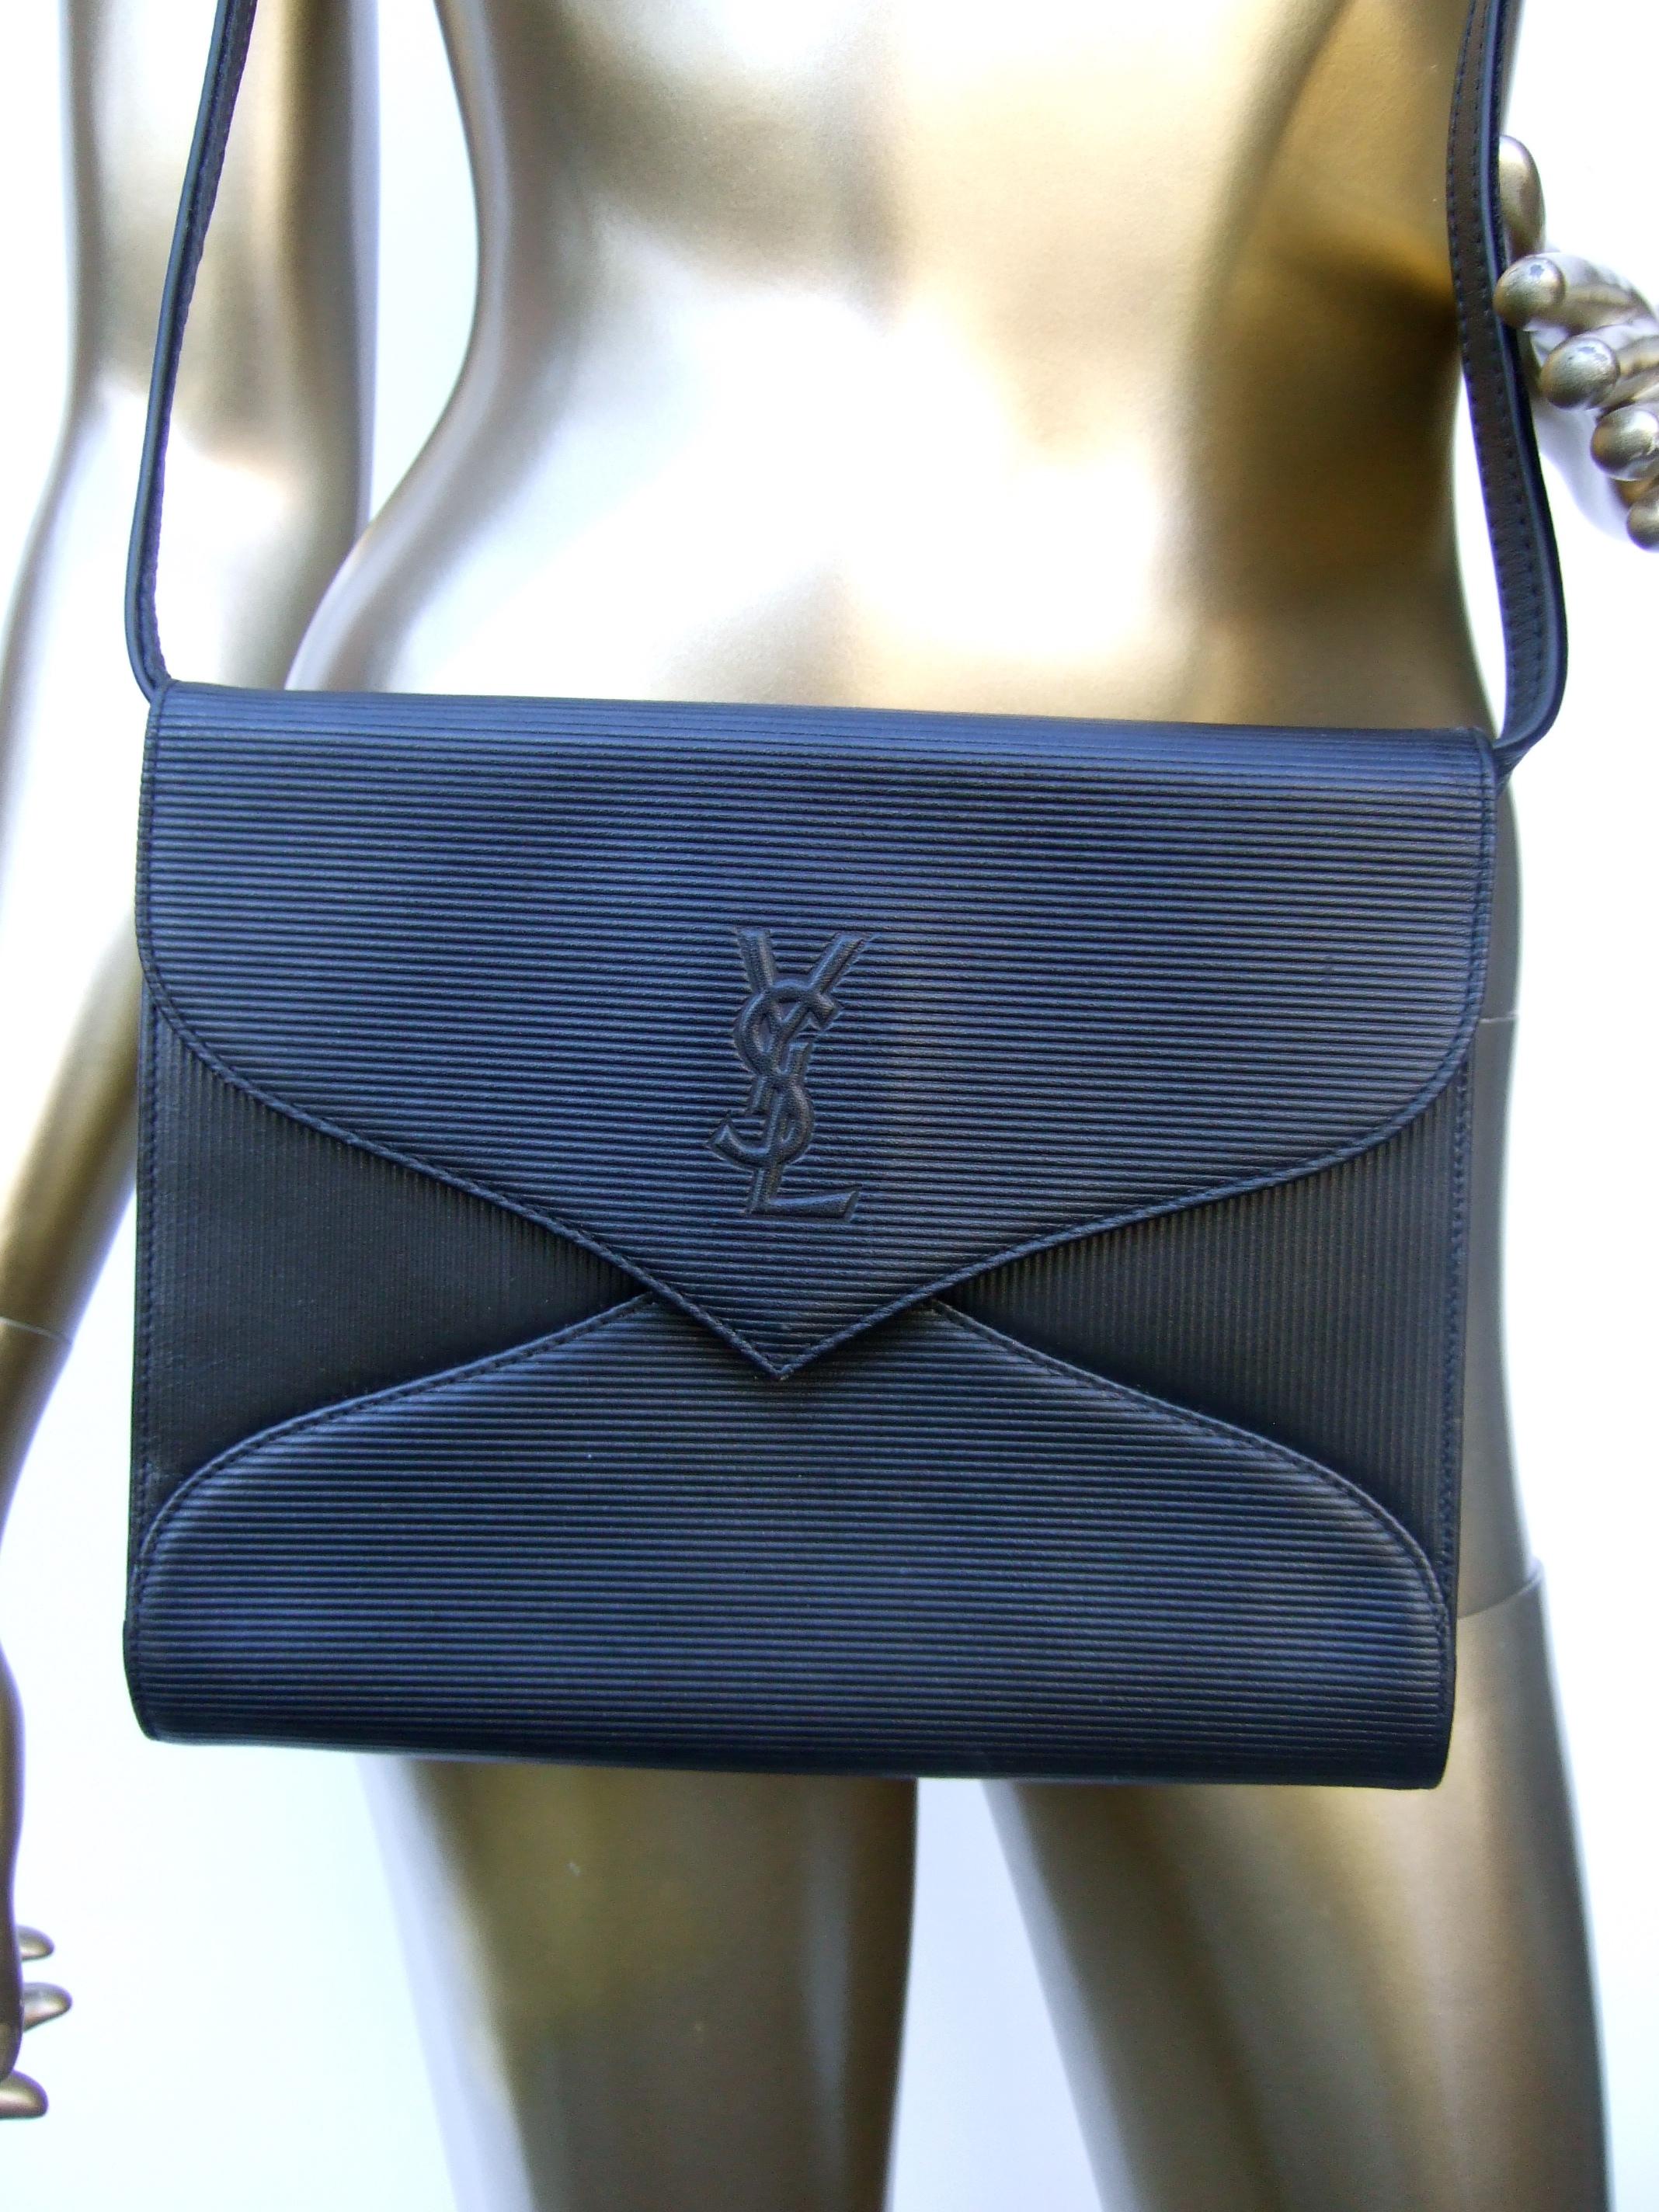 Women's Yves Saint Laurent Chic Black Leather Versatile Clutch - Shoulder Bag c 1980s